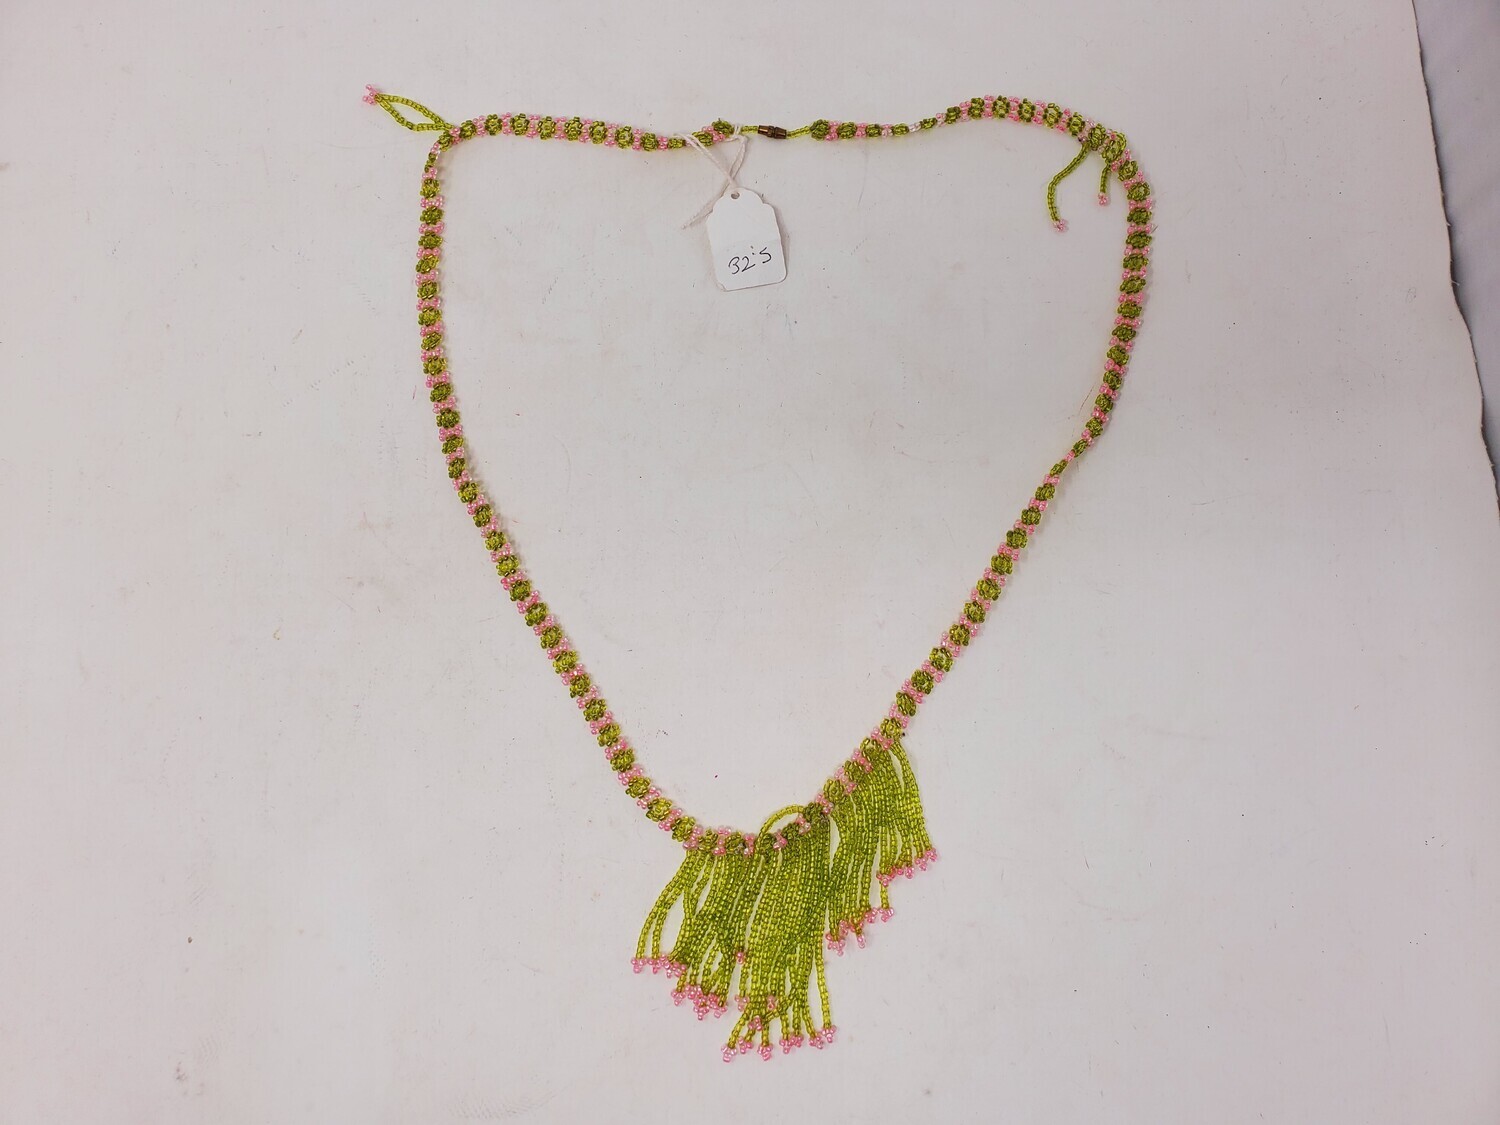 Handbeaded African Waist Beads - Size 32" / 81.3cm